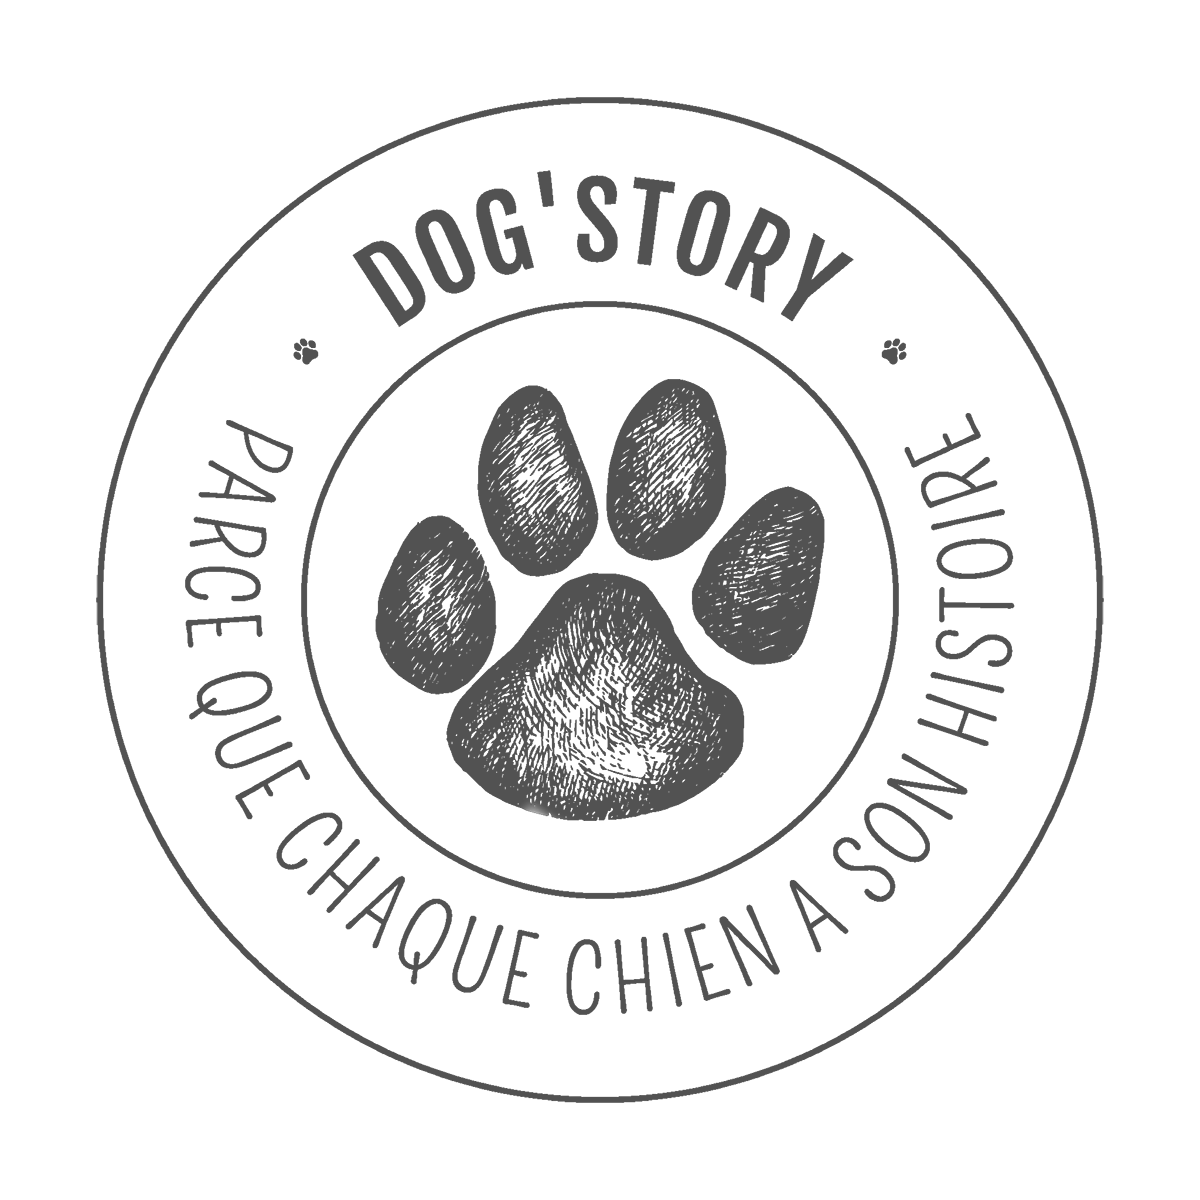 Dog'Story_1200px